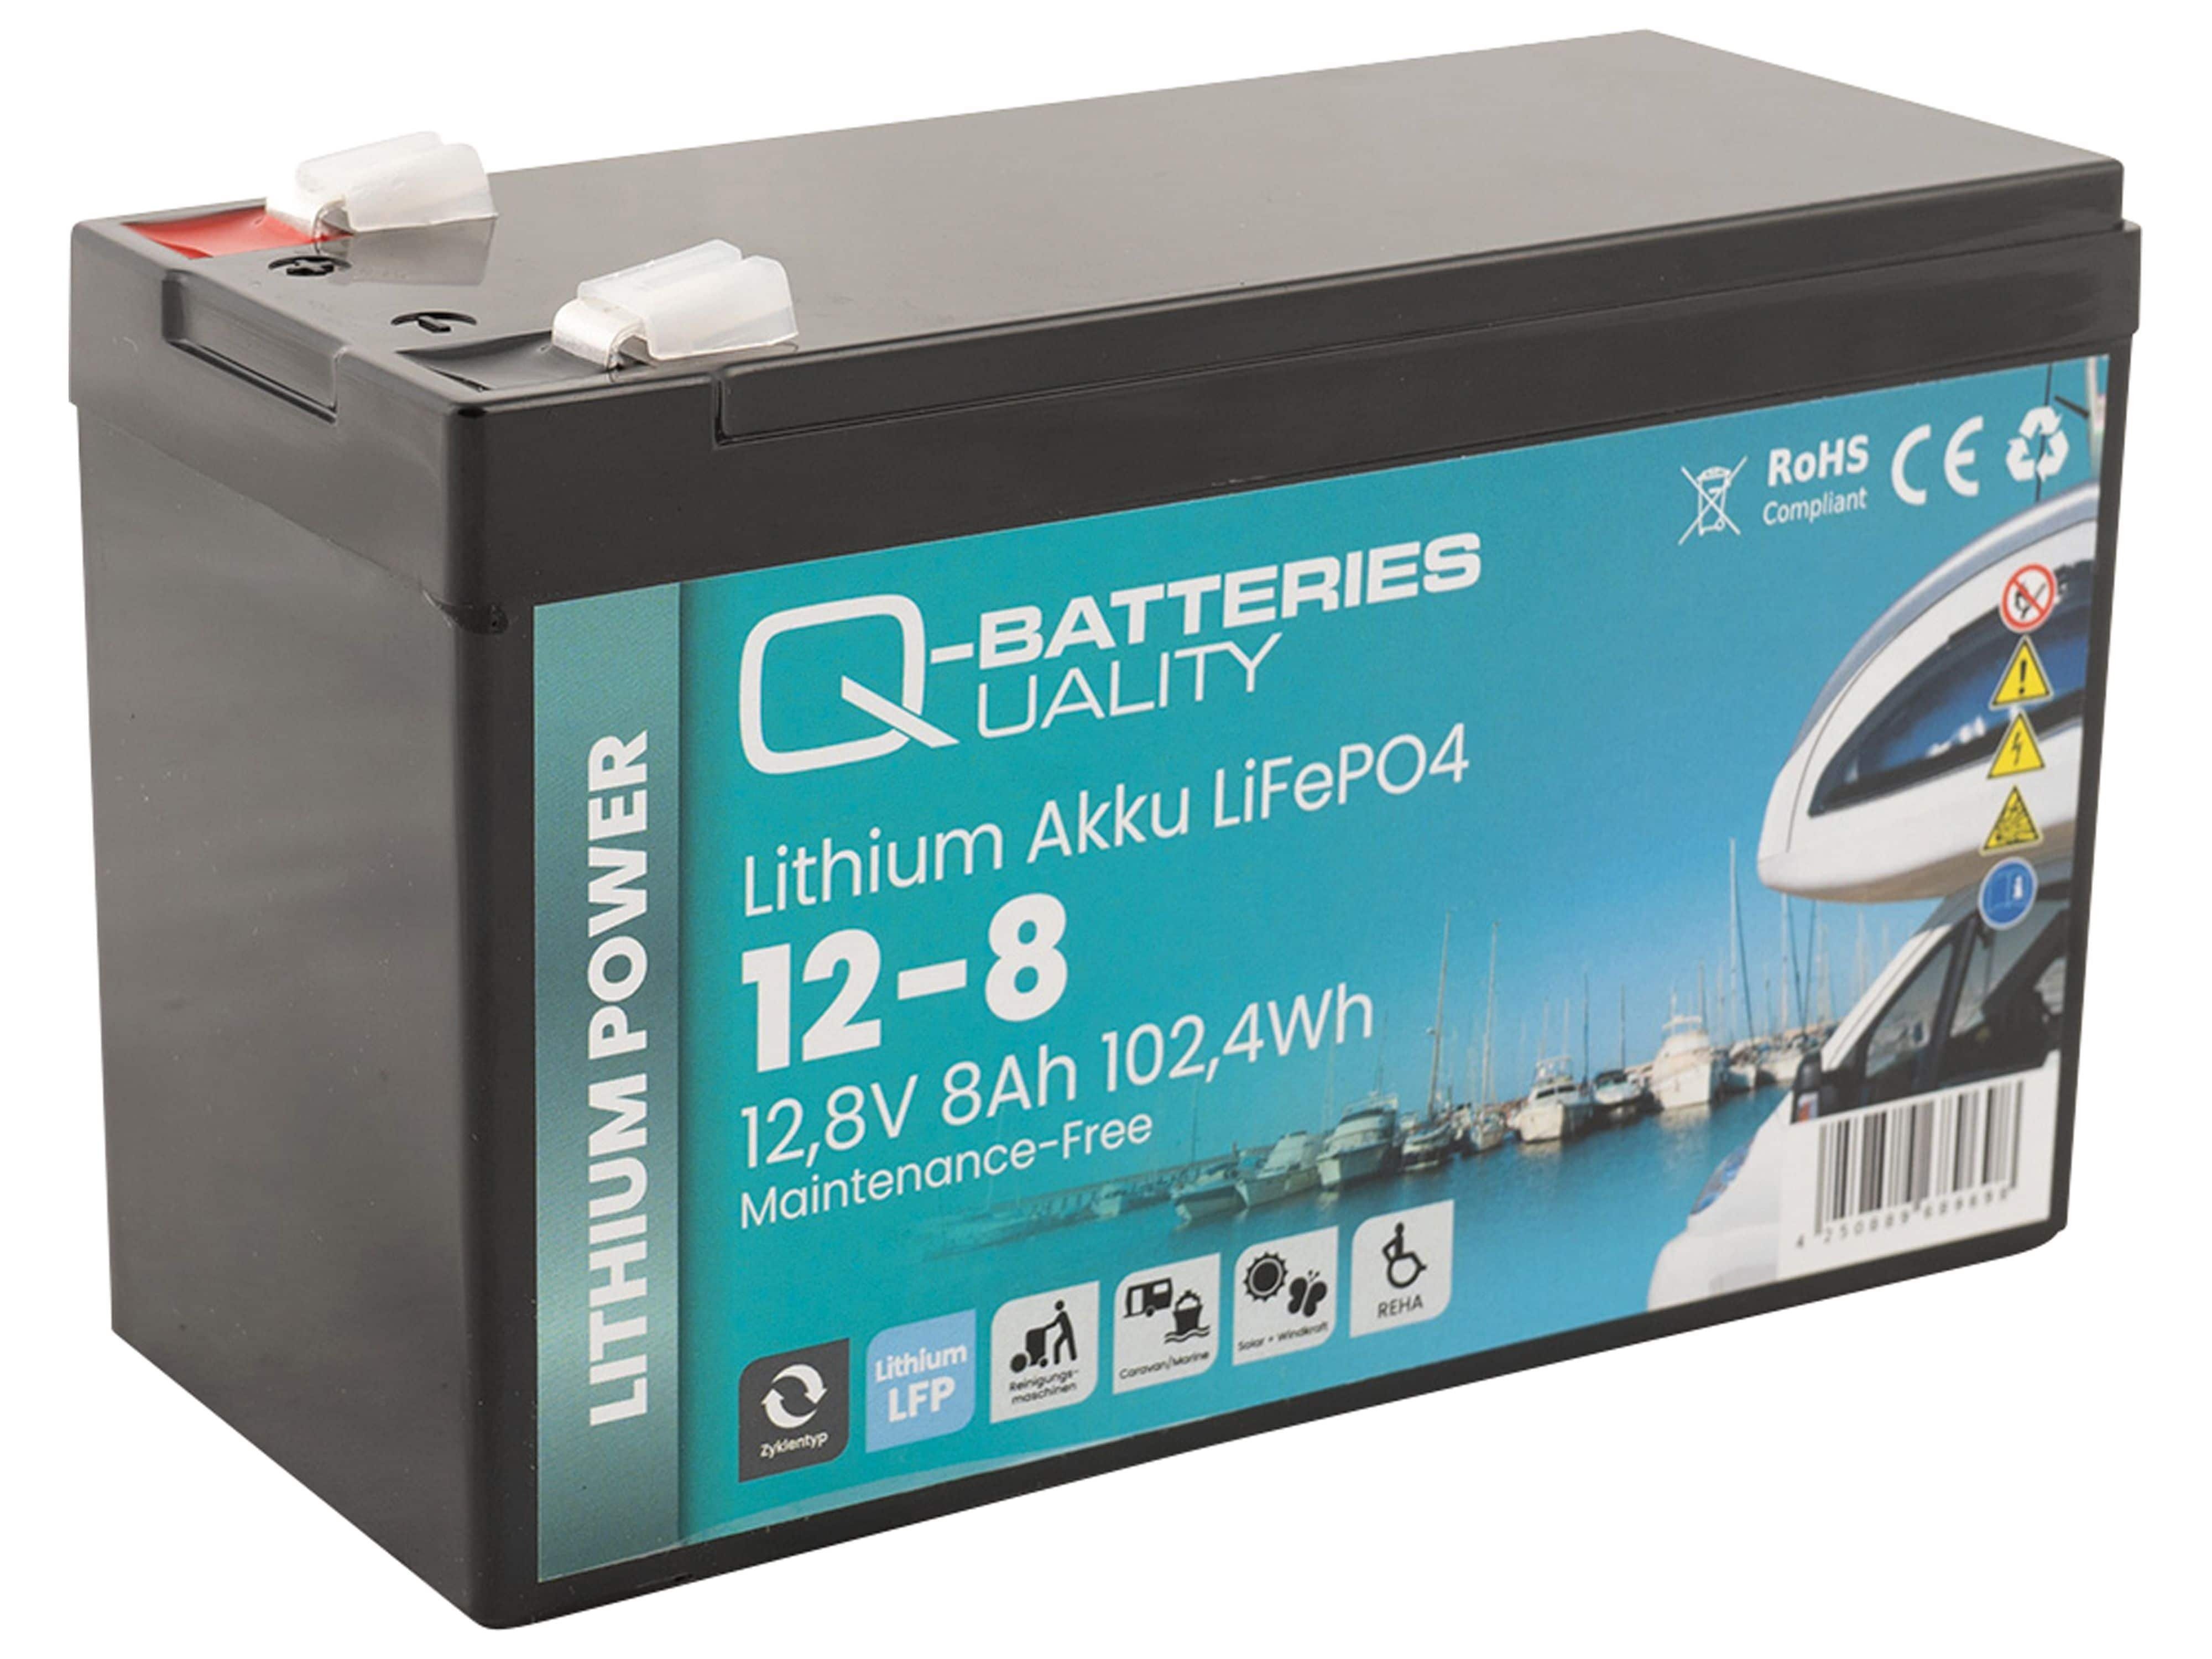 Q-Batteries Q-BATTERIES Lithium Akku 12-8 12,8V 8Ah, 102,4Wh Batterie | Batterien